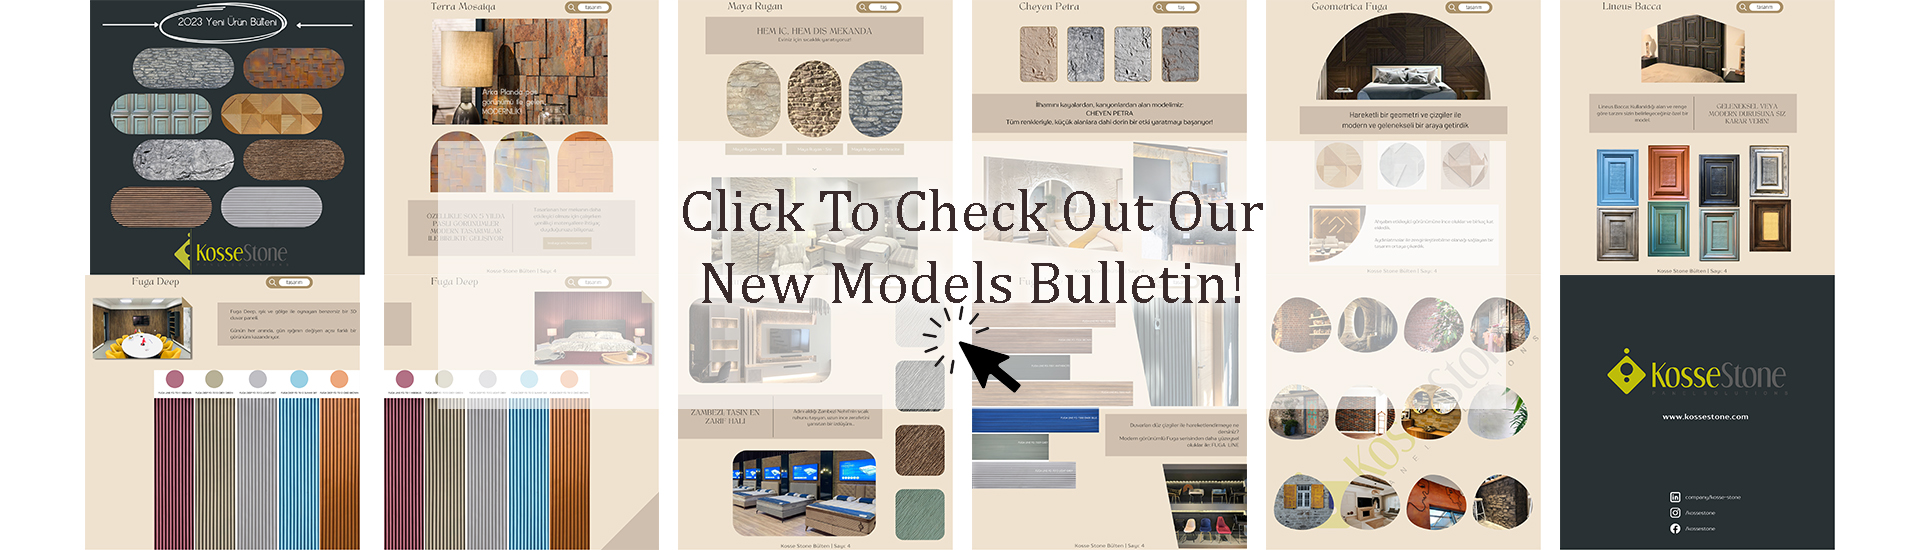 Kosse Stone New Model Bulletin